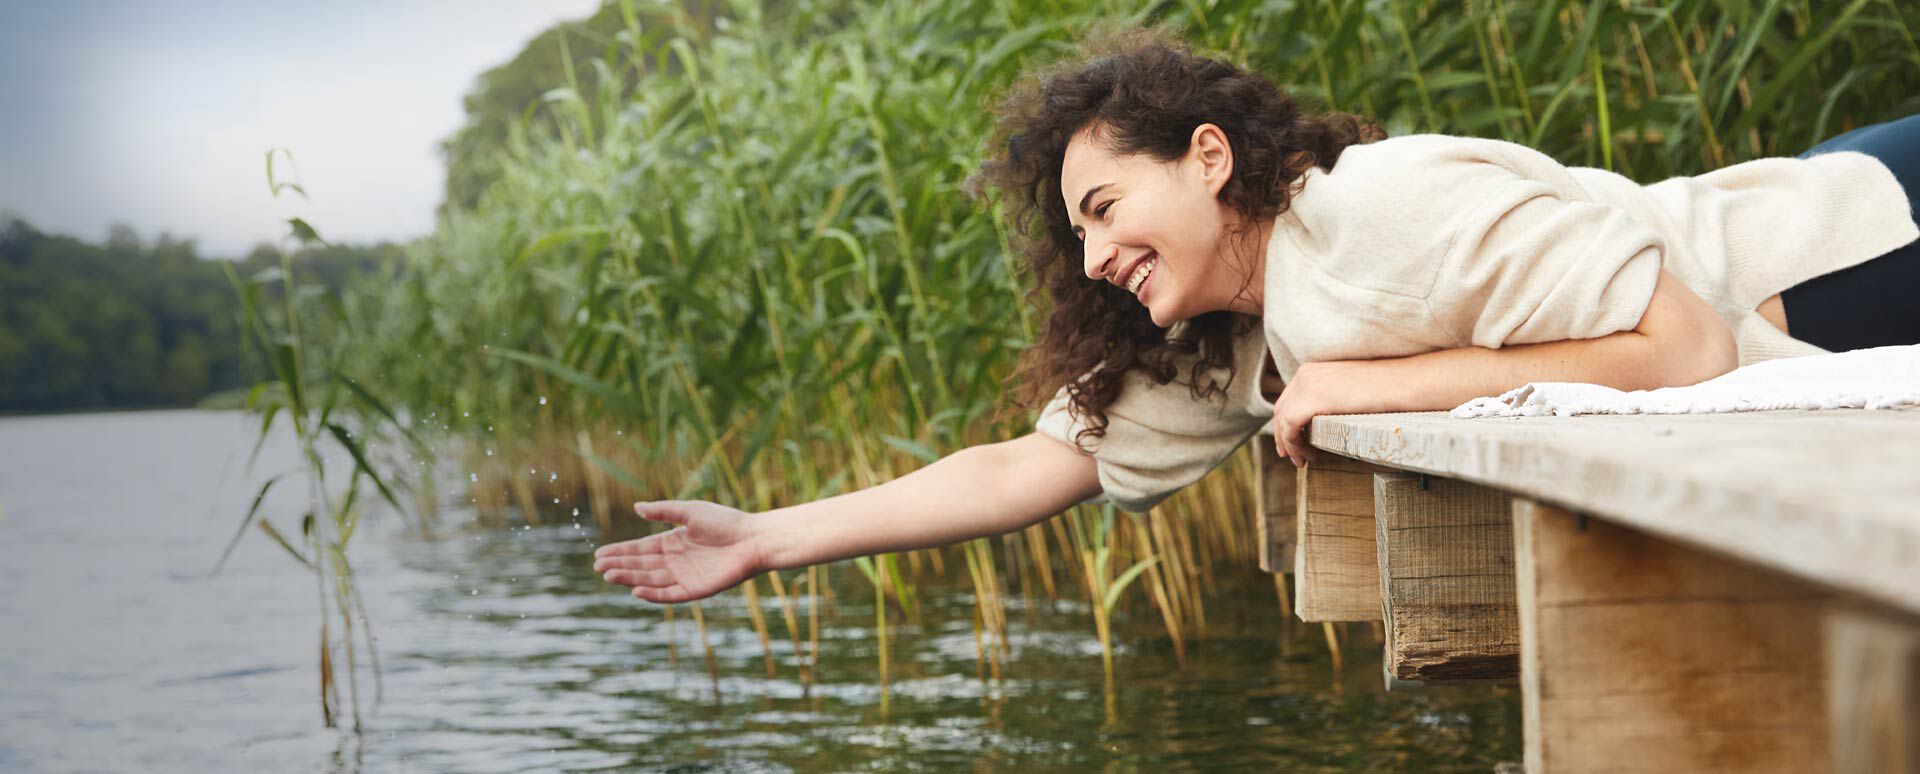 Les connaissances de Sebastian Kneipp sont aujourd'hui plus pertinentes que jamais. Sur la photo, une femme profite de l'eau fraîche d'un lac.